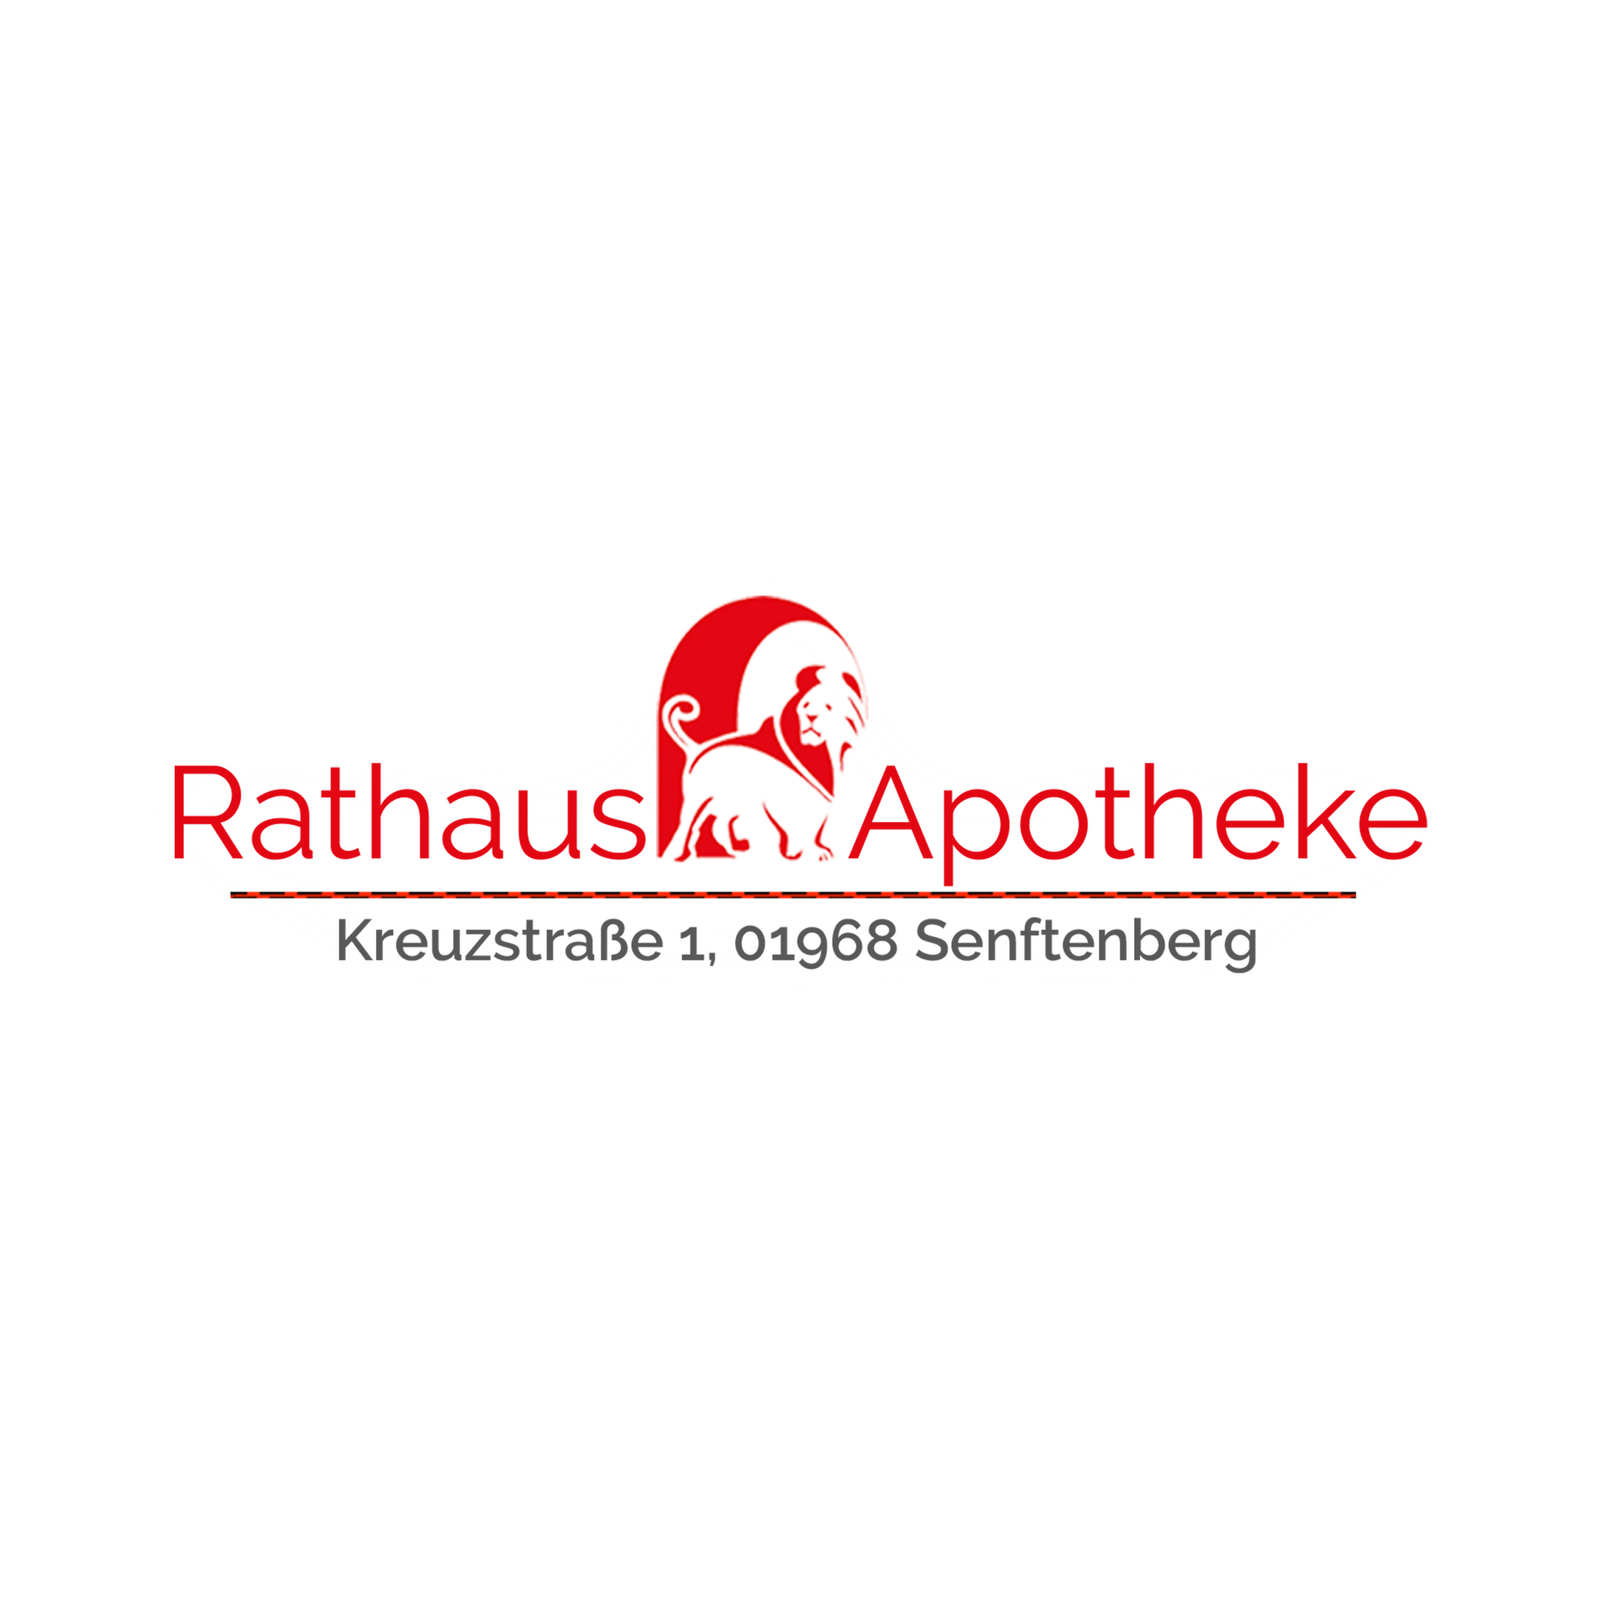 Rathaus-Apotheke in Senftenberg - Logo